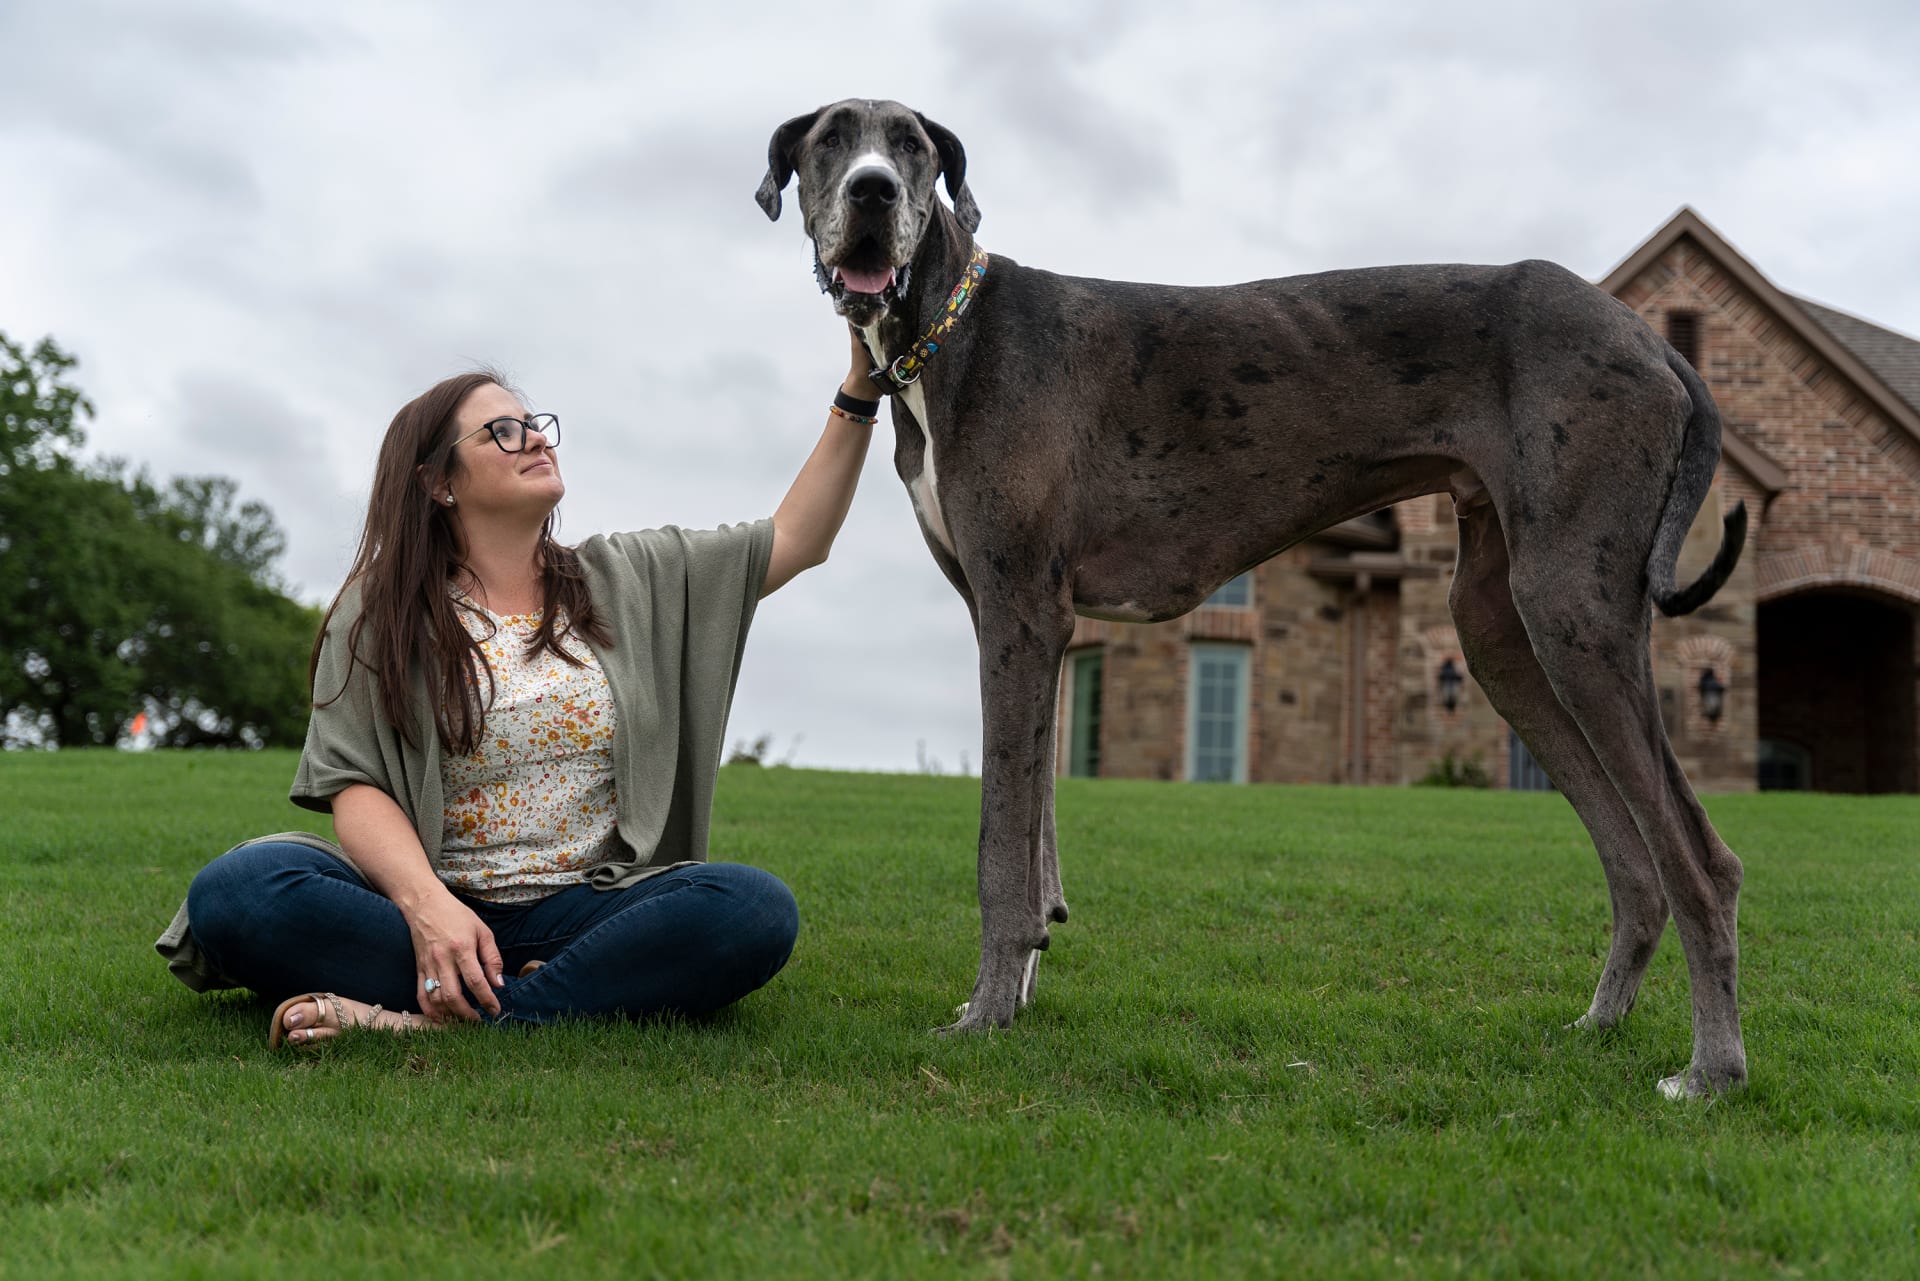  أطول كلاب العالم اسمه "زوس".. من أي فصيلة يتحدّر؟